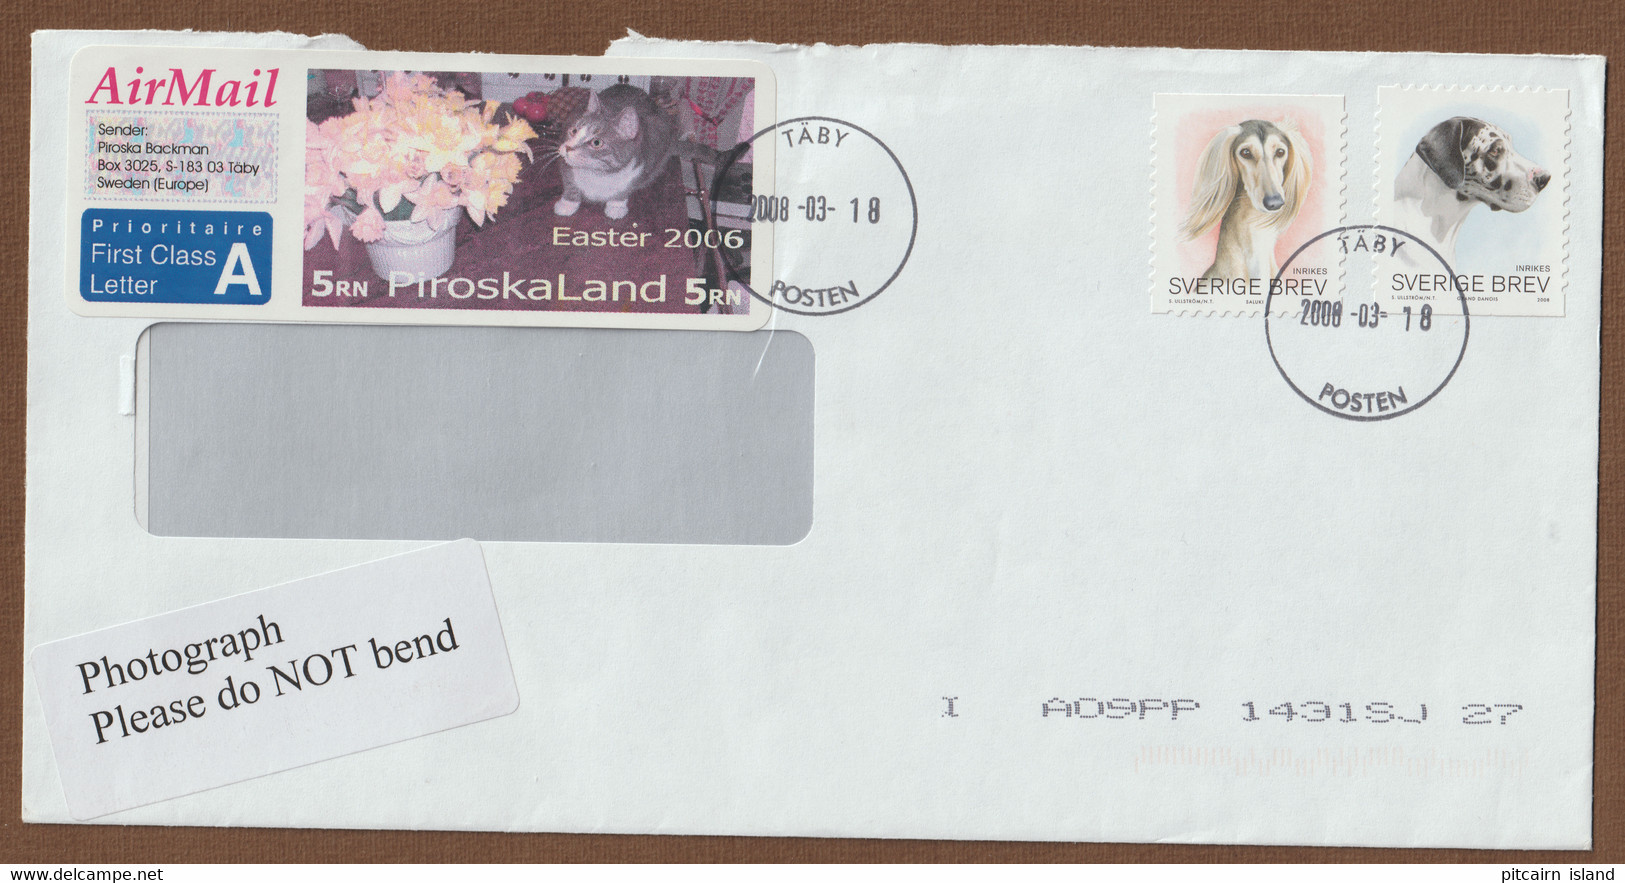 Piroskaland, Sverige Brav, Sweden Letter 2008-03-18 - Covers & Documents